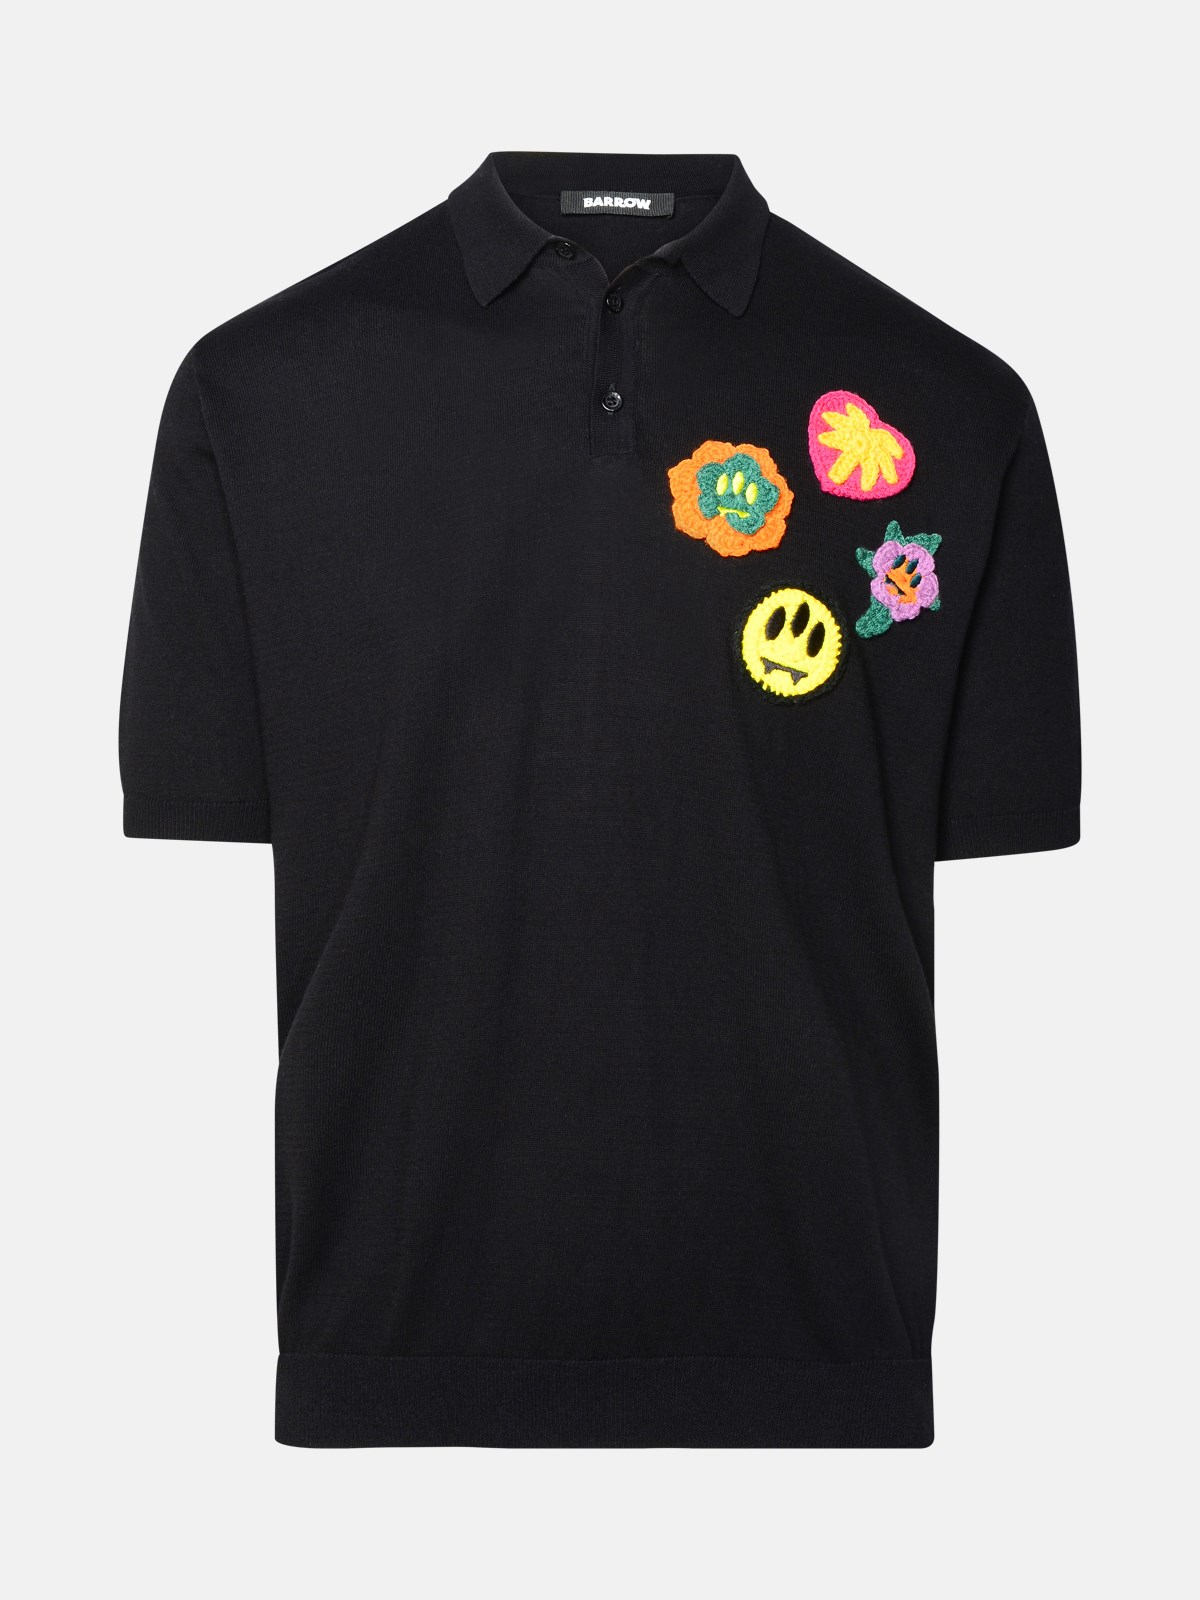 Shop Barrow Black Cotton Polo Shirt